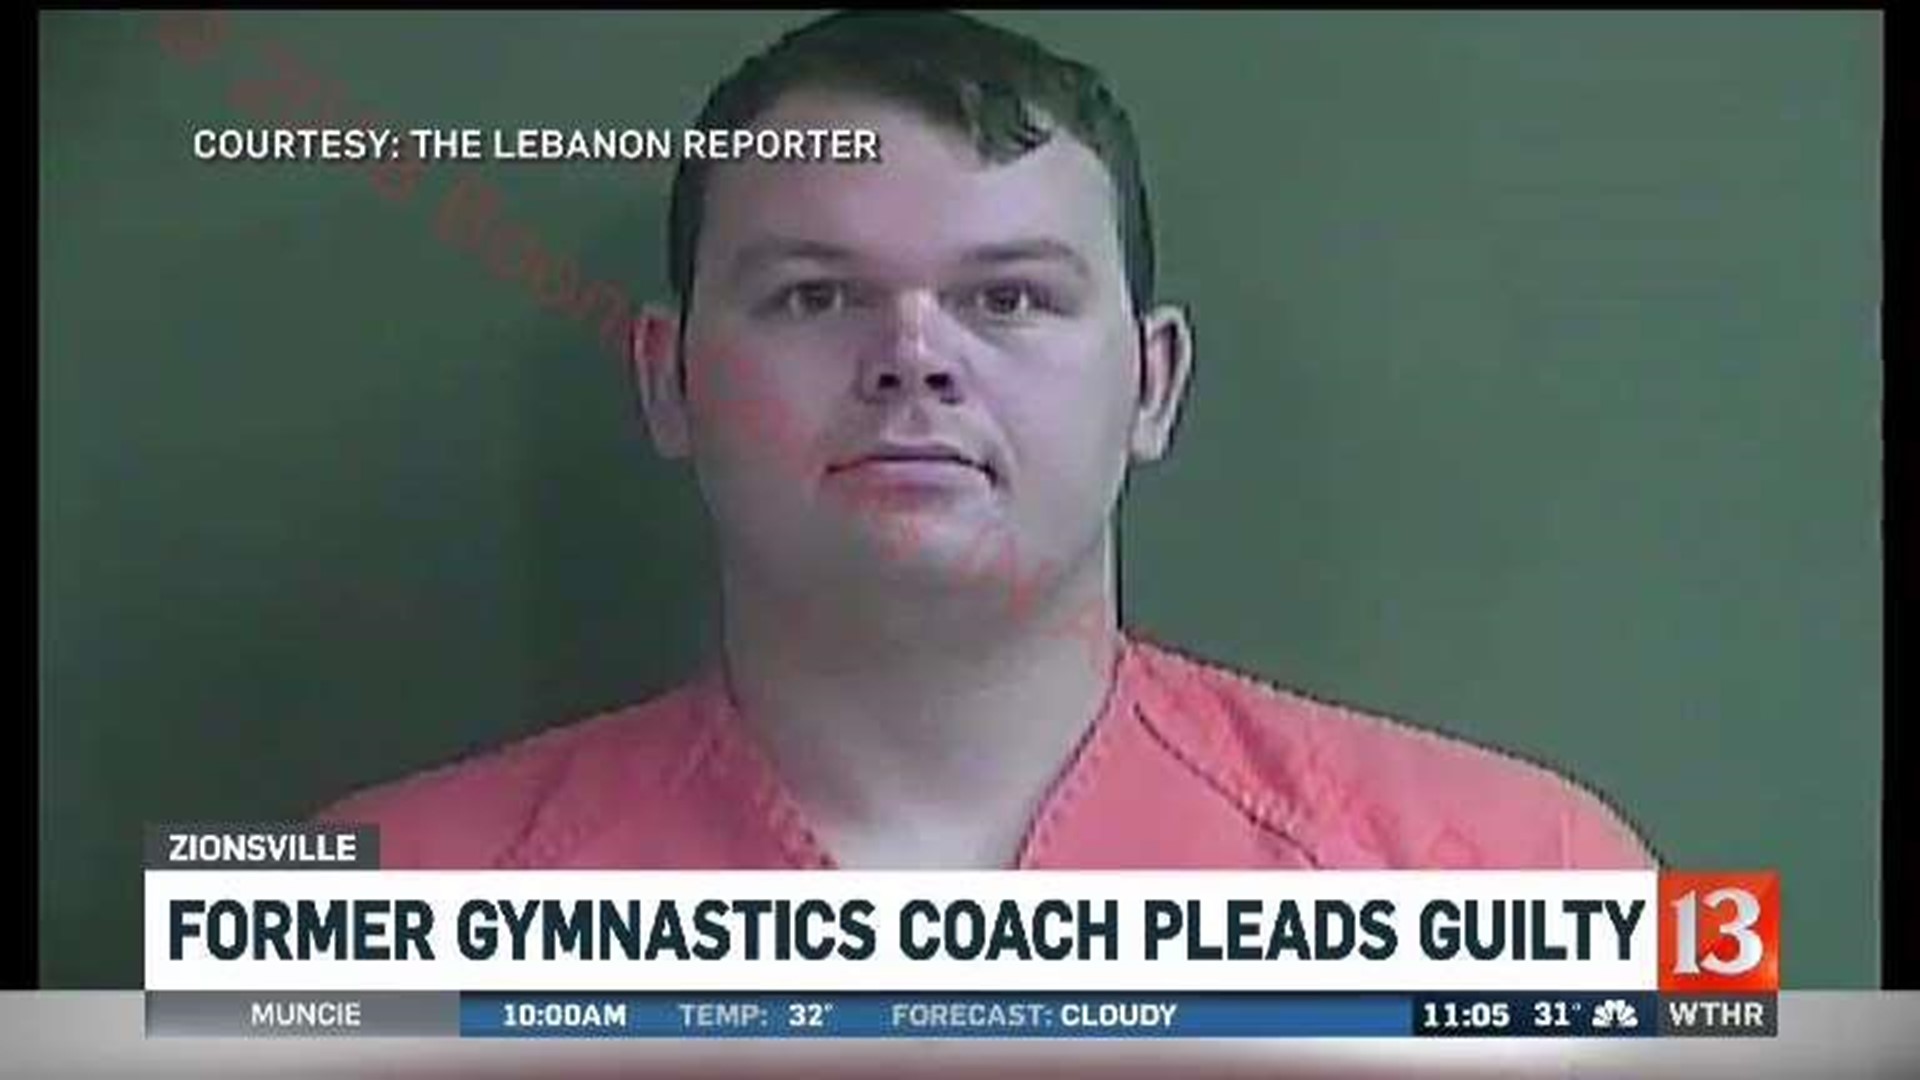 Former gymnastics coach enters plea